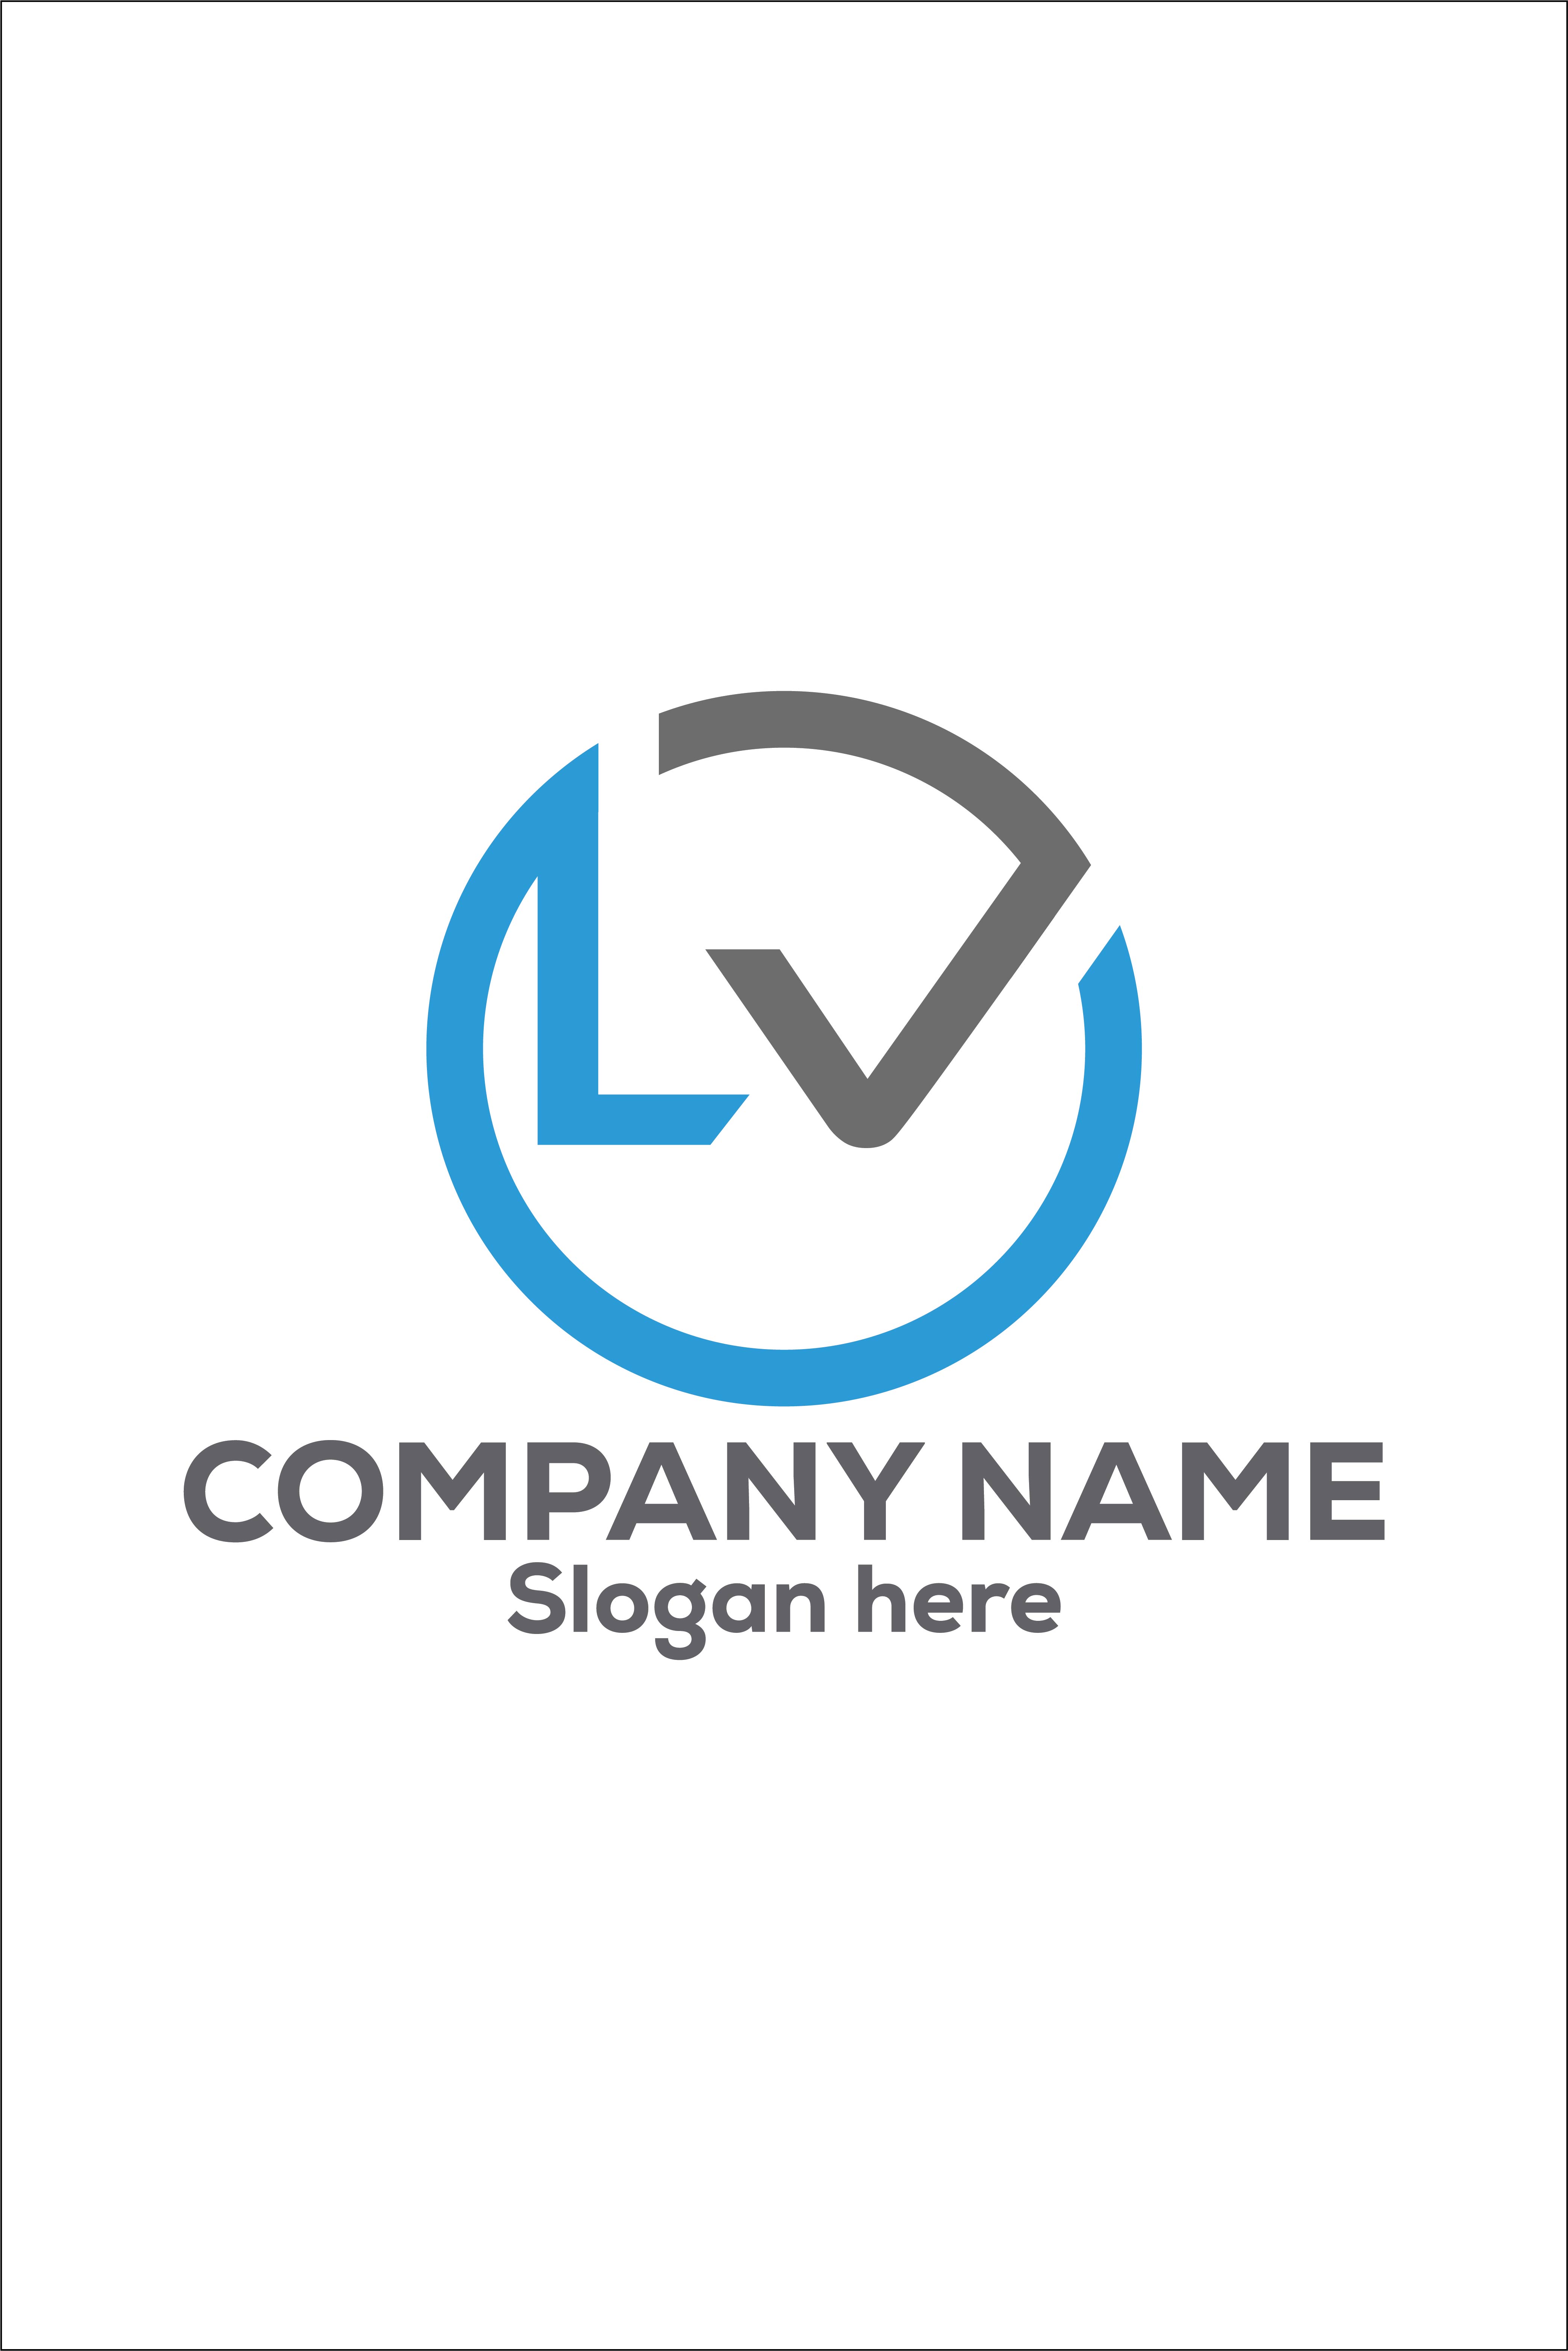 LV logo. L V design. White LV letter. LV letter logo design